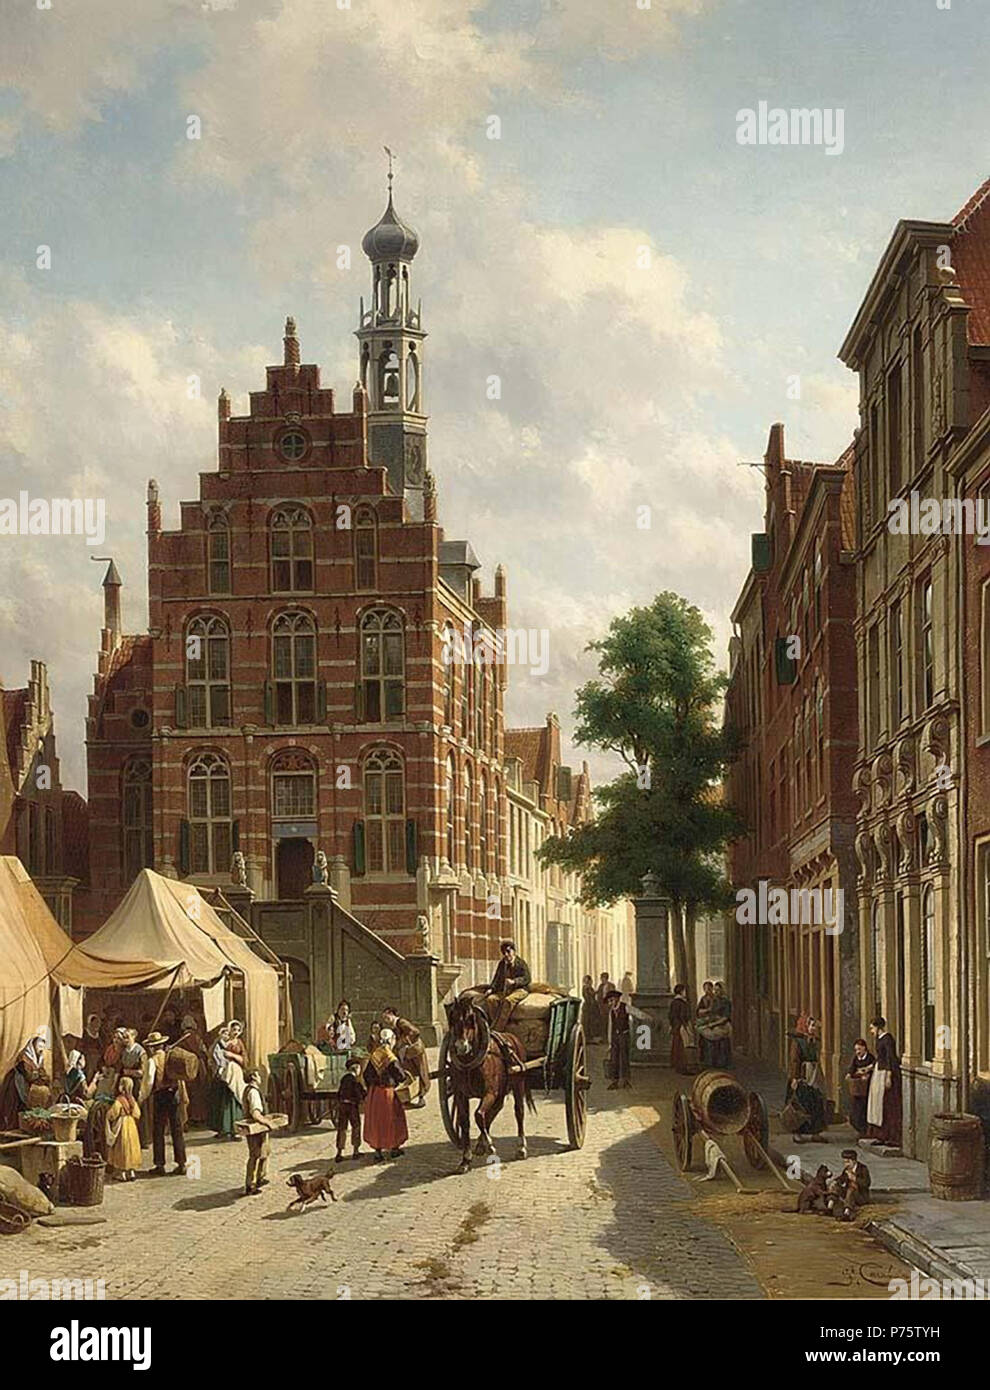 (1834 - 1933) -,. ================================================= Jacques François Joseph Carabain, oder Jakob Frans Jozef Carabain (23. Februar 1834, Amsterdam, 2. Januar 1933 Schaerbeek) war ein niederländisch-belgischen Maler, der in erster Linie für seine Szenen von Städten und Gebäuden in der Romantic-Realist Stil bekannt. Er insbesondere in mittelalterlichen und barocken Strukturen interessiert war, und wurde oft zu belebten Markt Orten angezogen. www.youtube.com/watchv=dMFnMcohTbk. Vom 6. Februar 2018, 20:43 145 Jacques Carabain056 (39228762985) Stockfoto